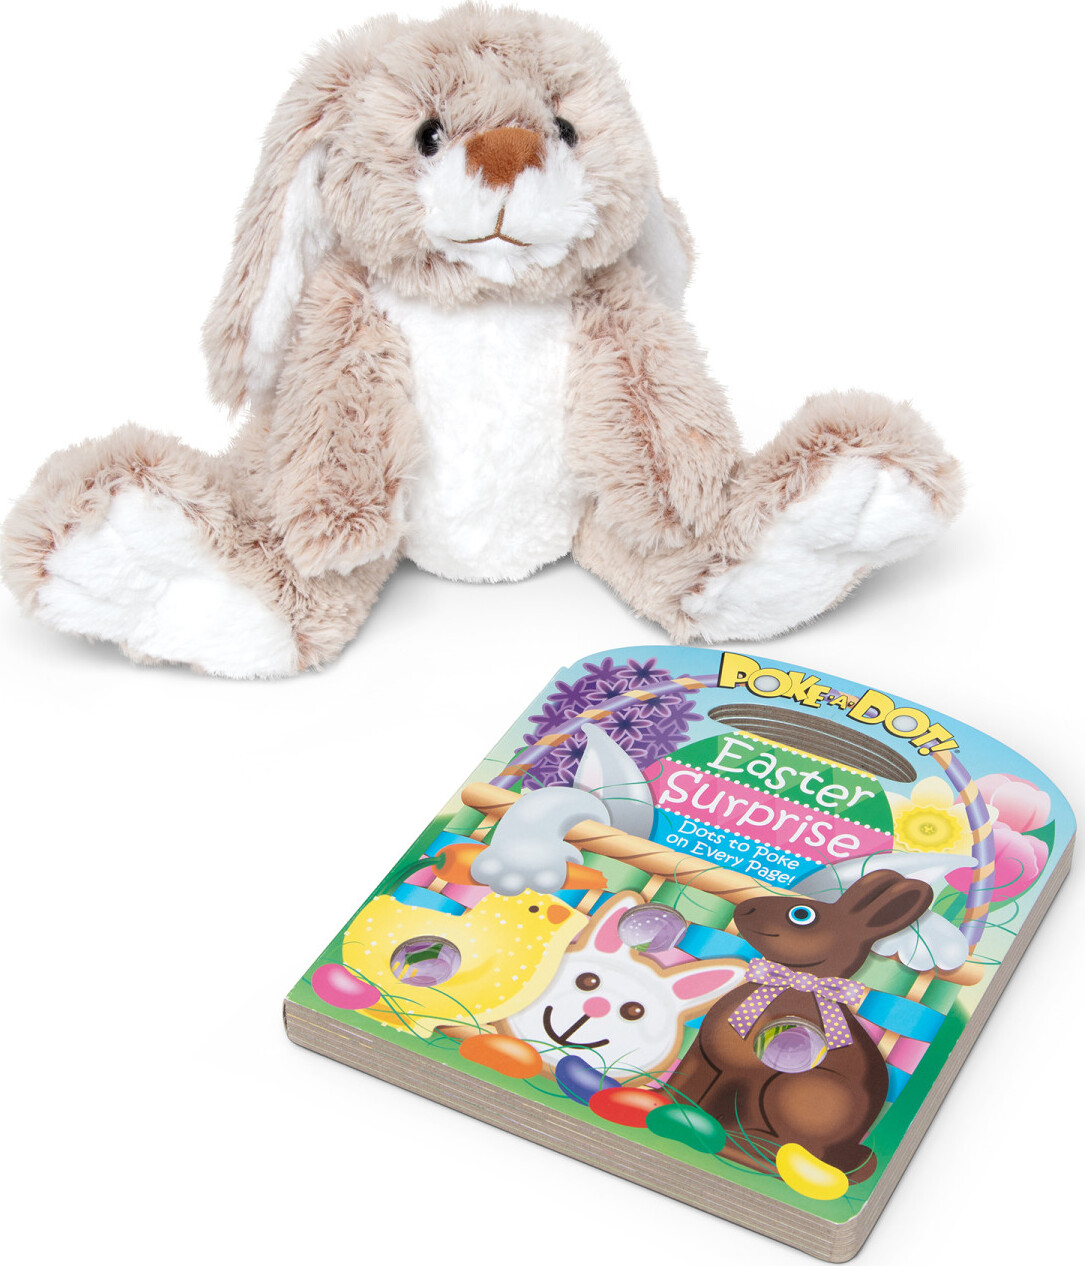 Melissa & Doug 7674 Burrow Bunny Rabbit Stuffed Animal for sale online